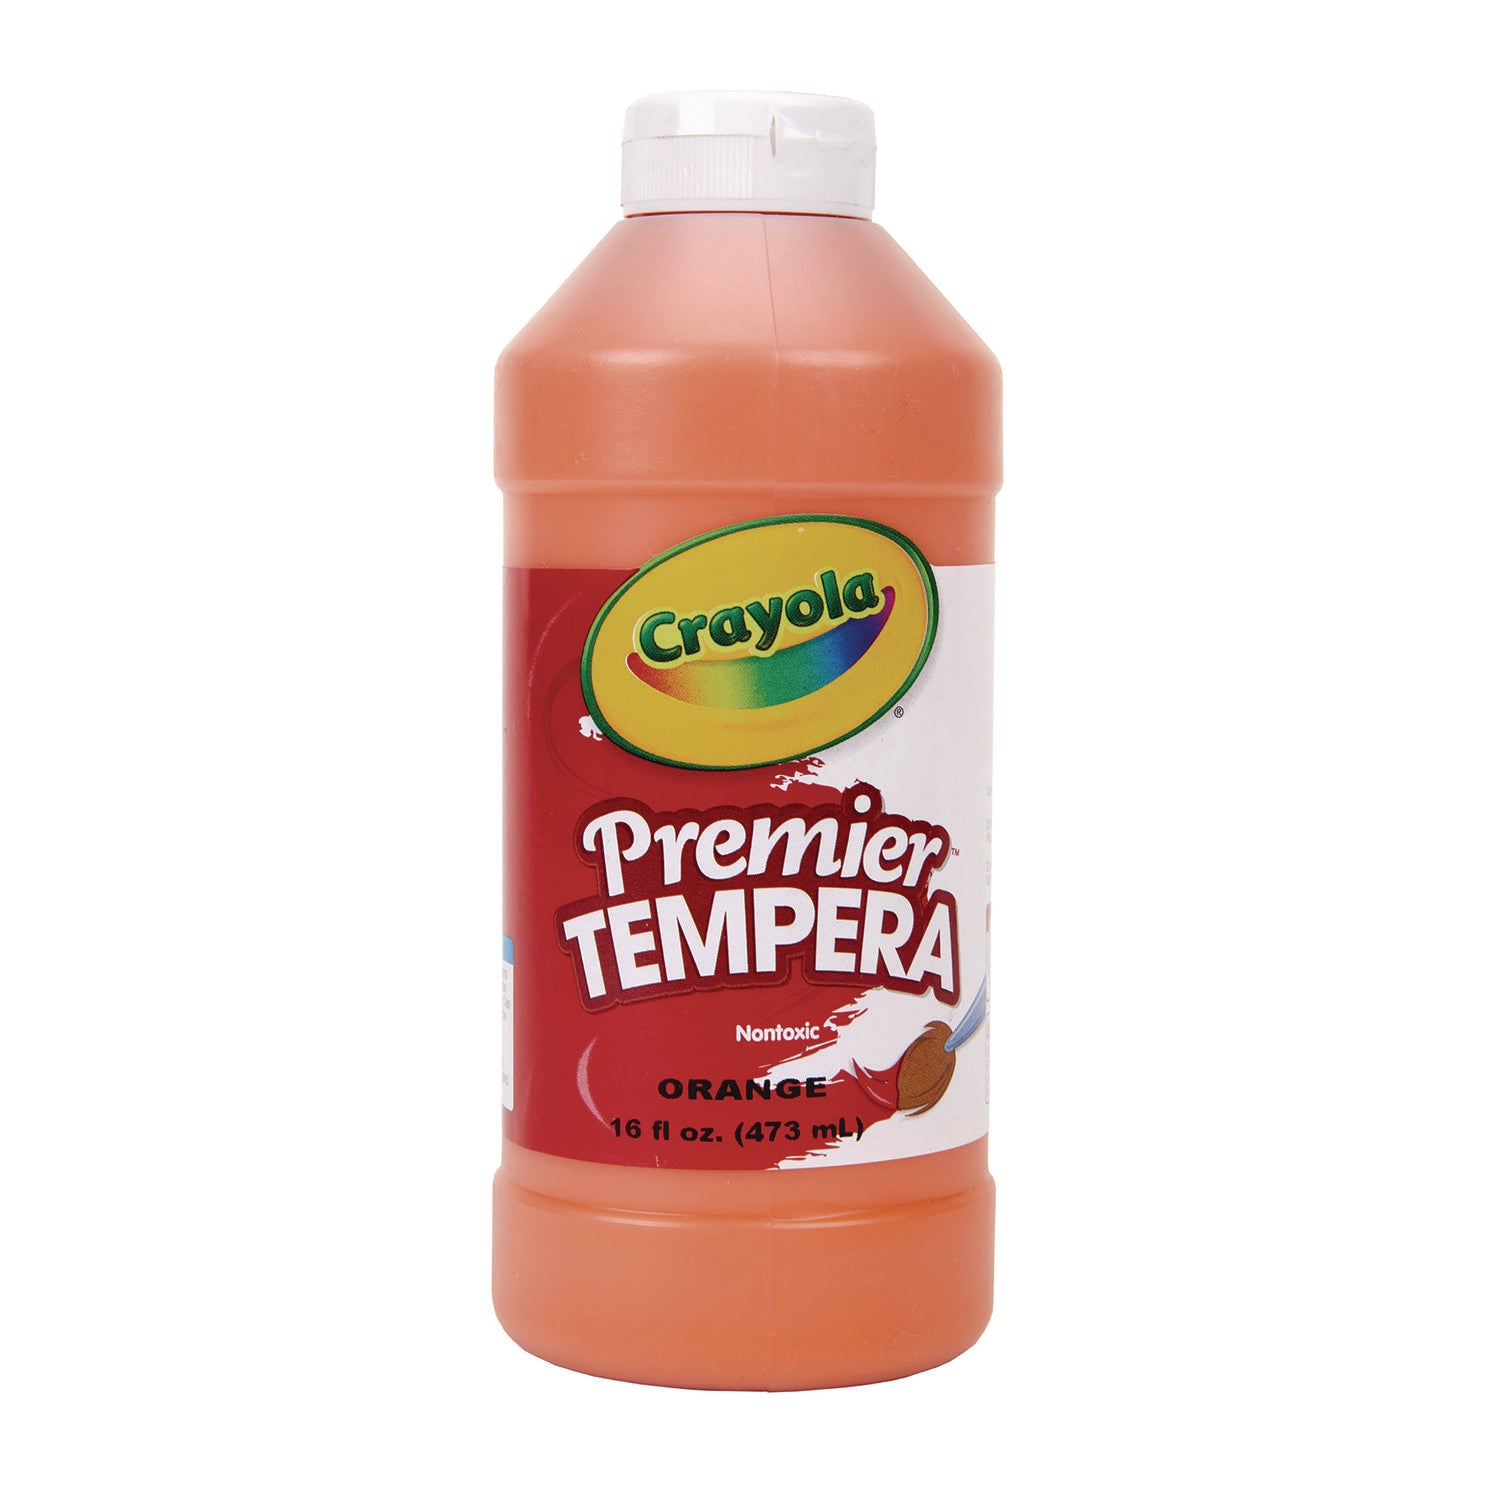 Premier Tempera Paint, Orange, 16 oz Bottle - 